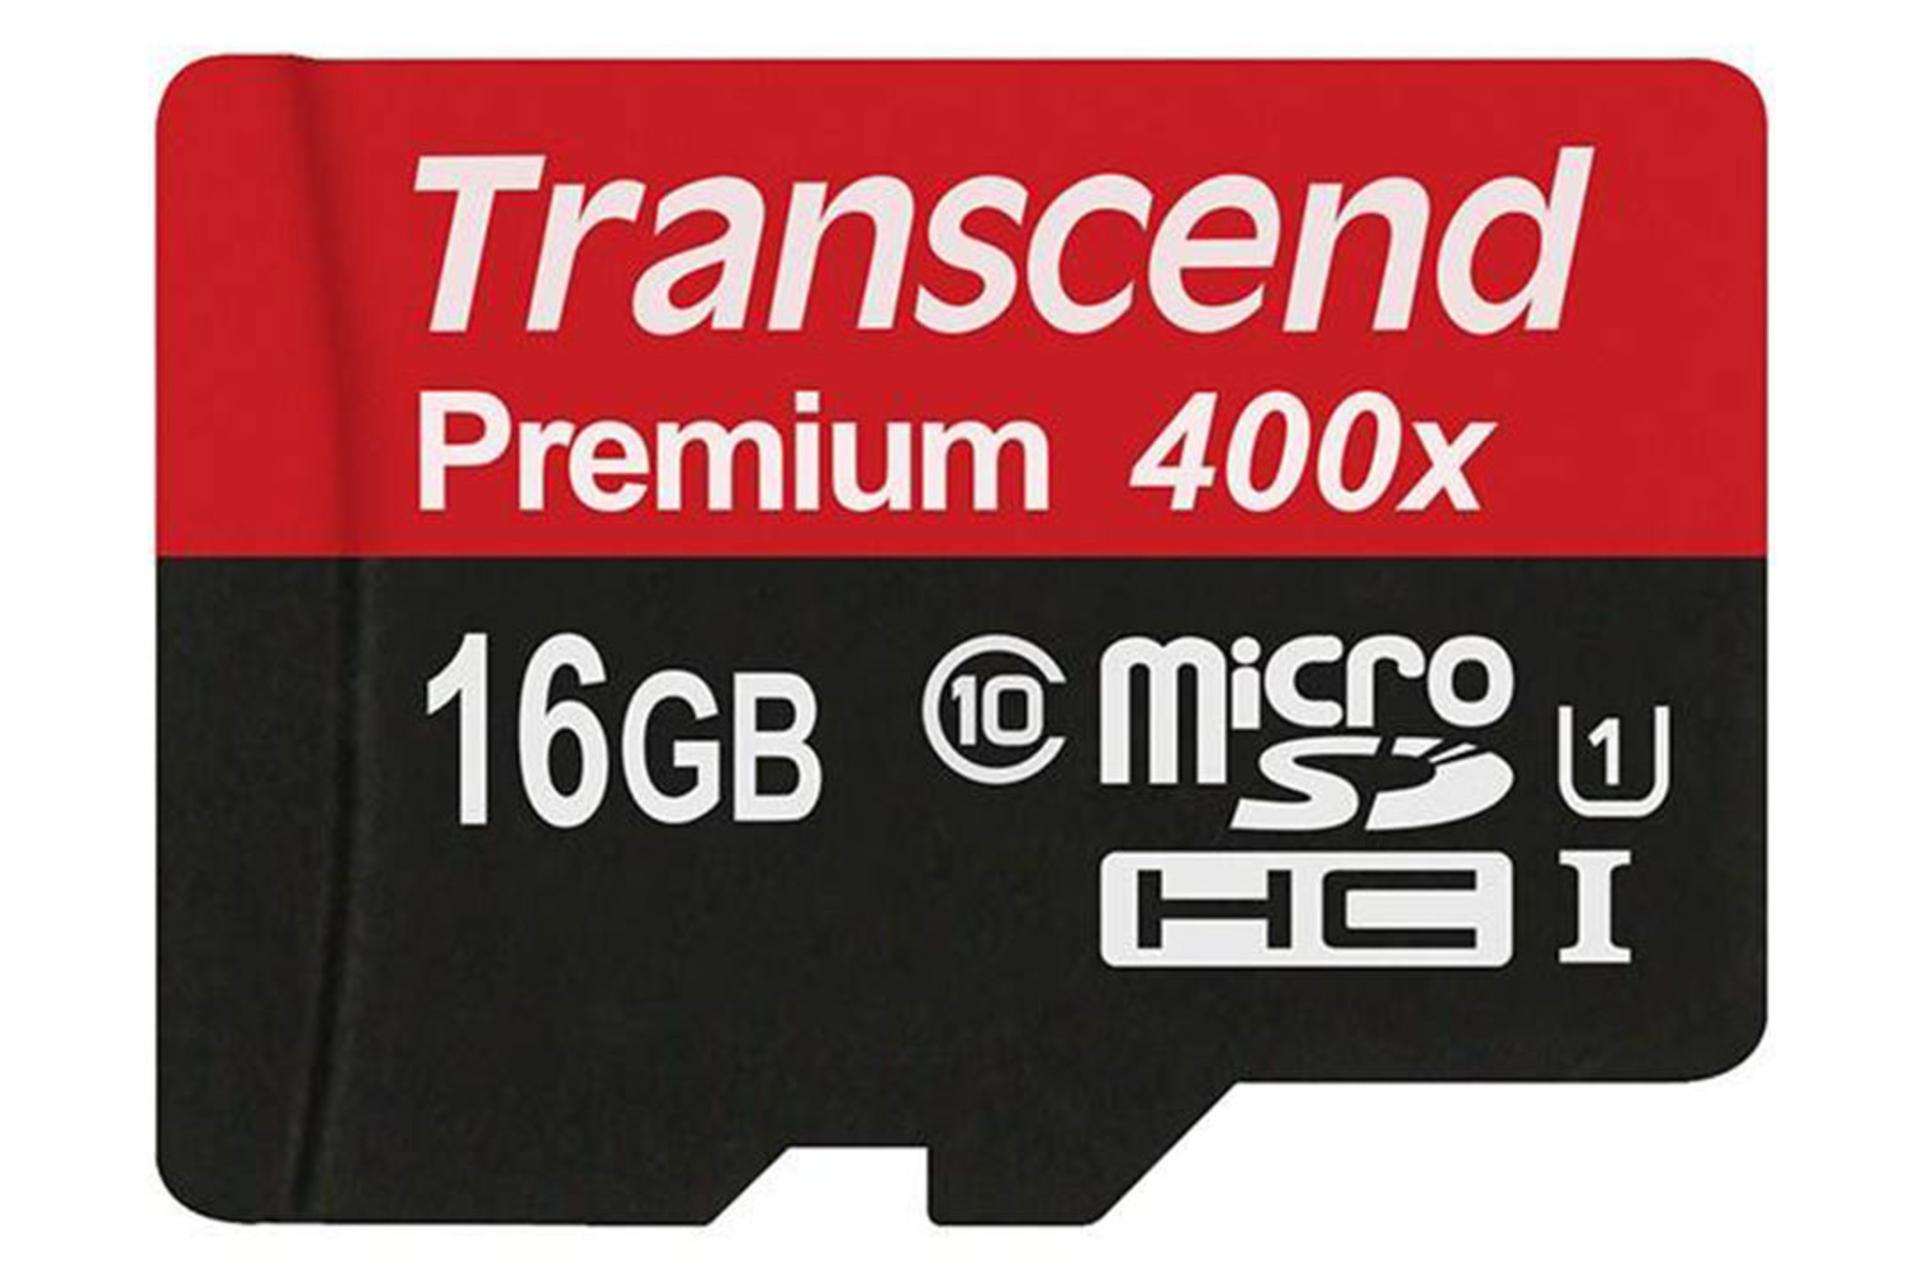 Transcend Premium SDHC Class 10 UHS-I U1 32GB